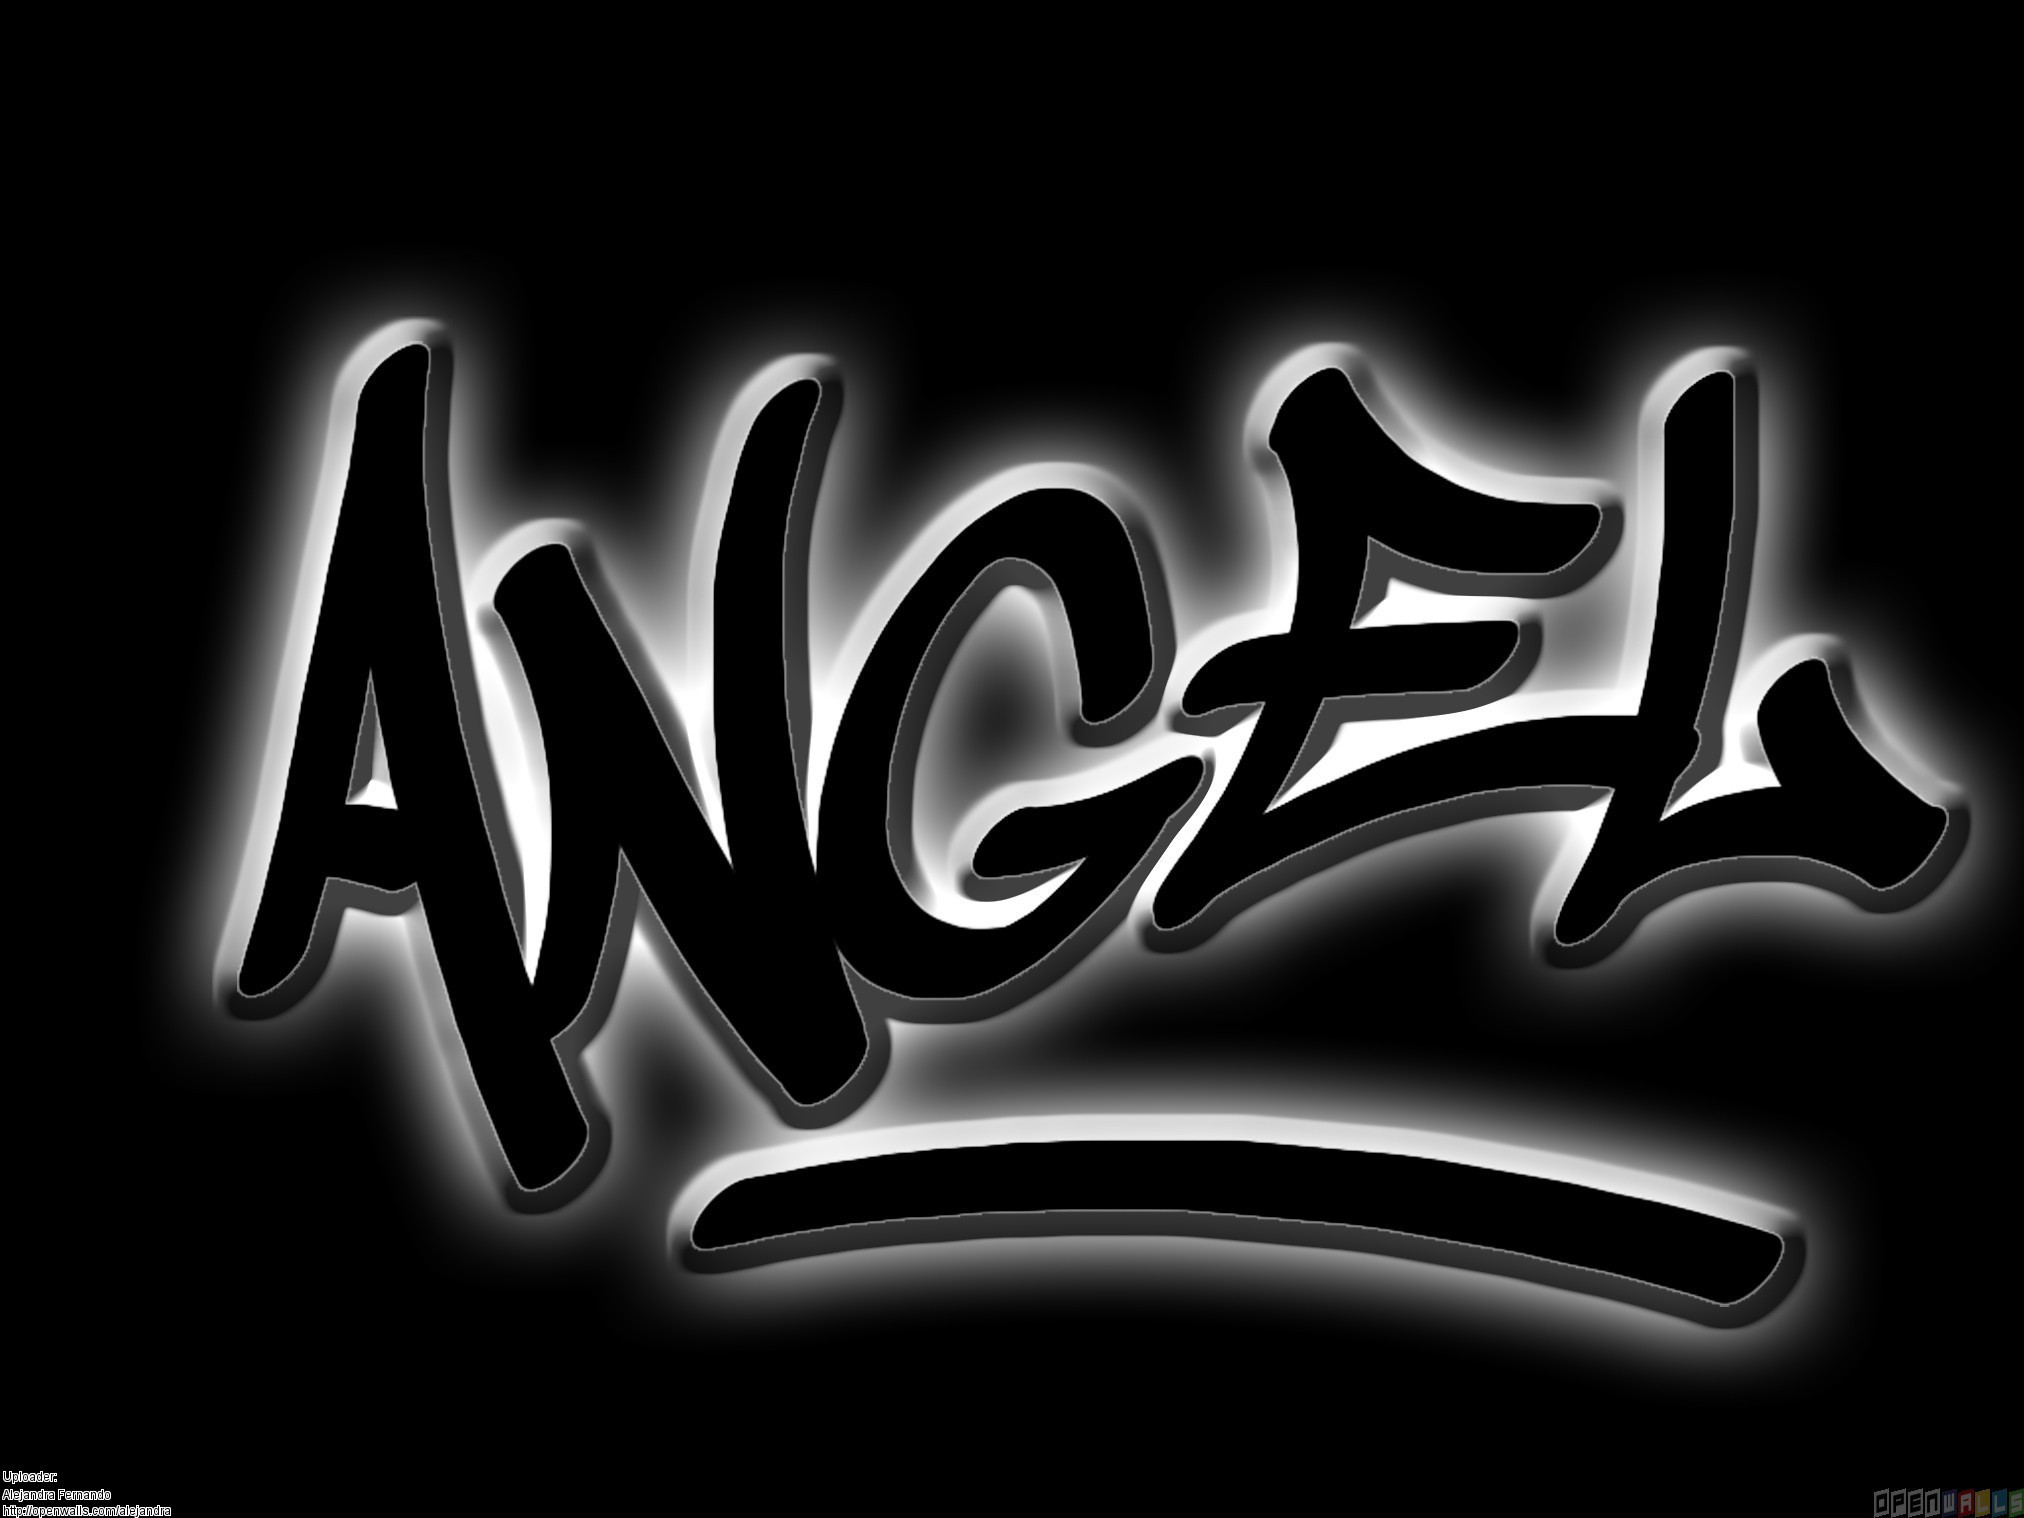 Angel Name Wallpaper Angel Name Wallpaper - Word Angel In Graffiti -  2024x1518 Wallpaper 